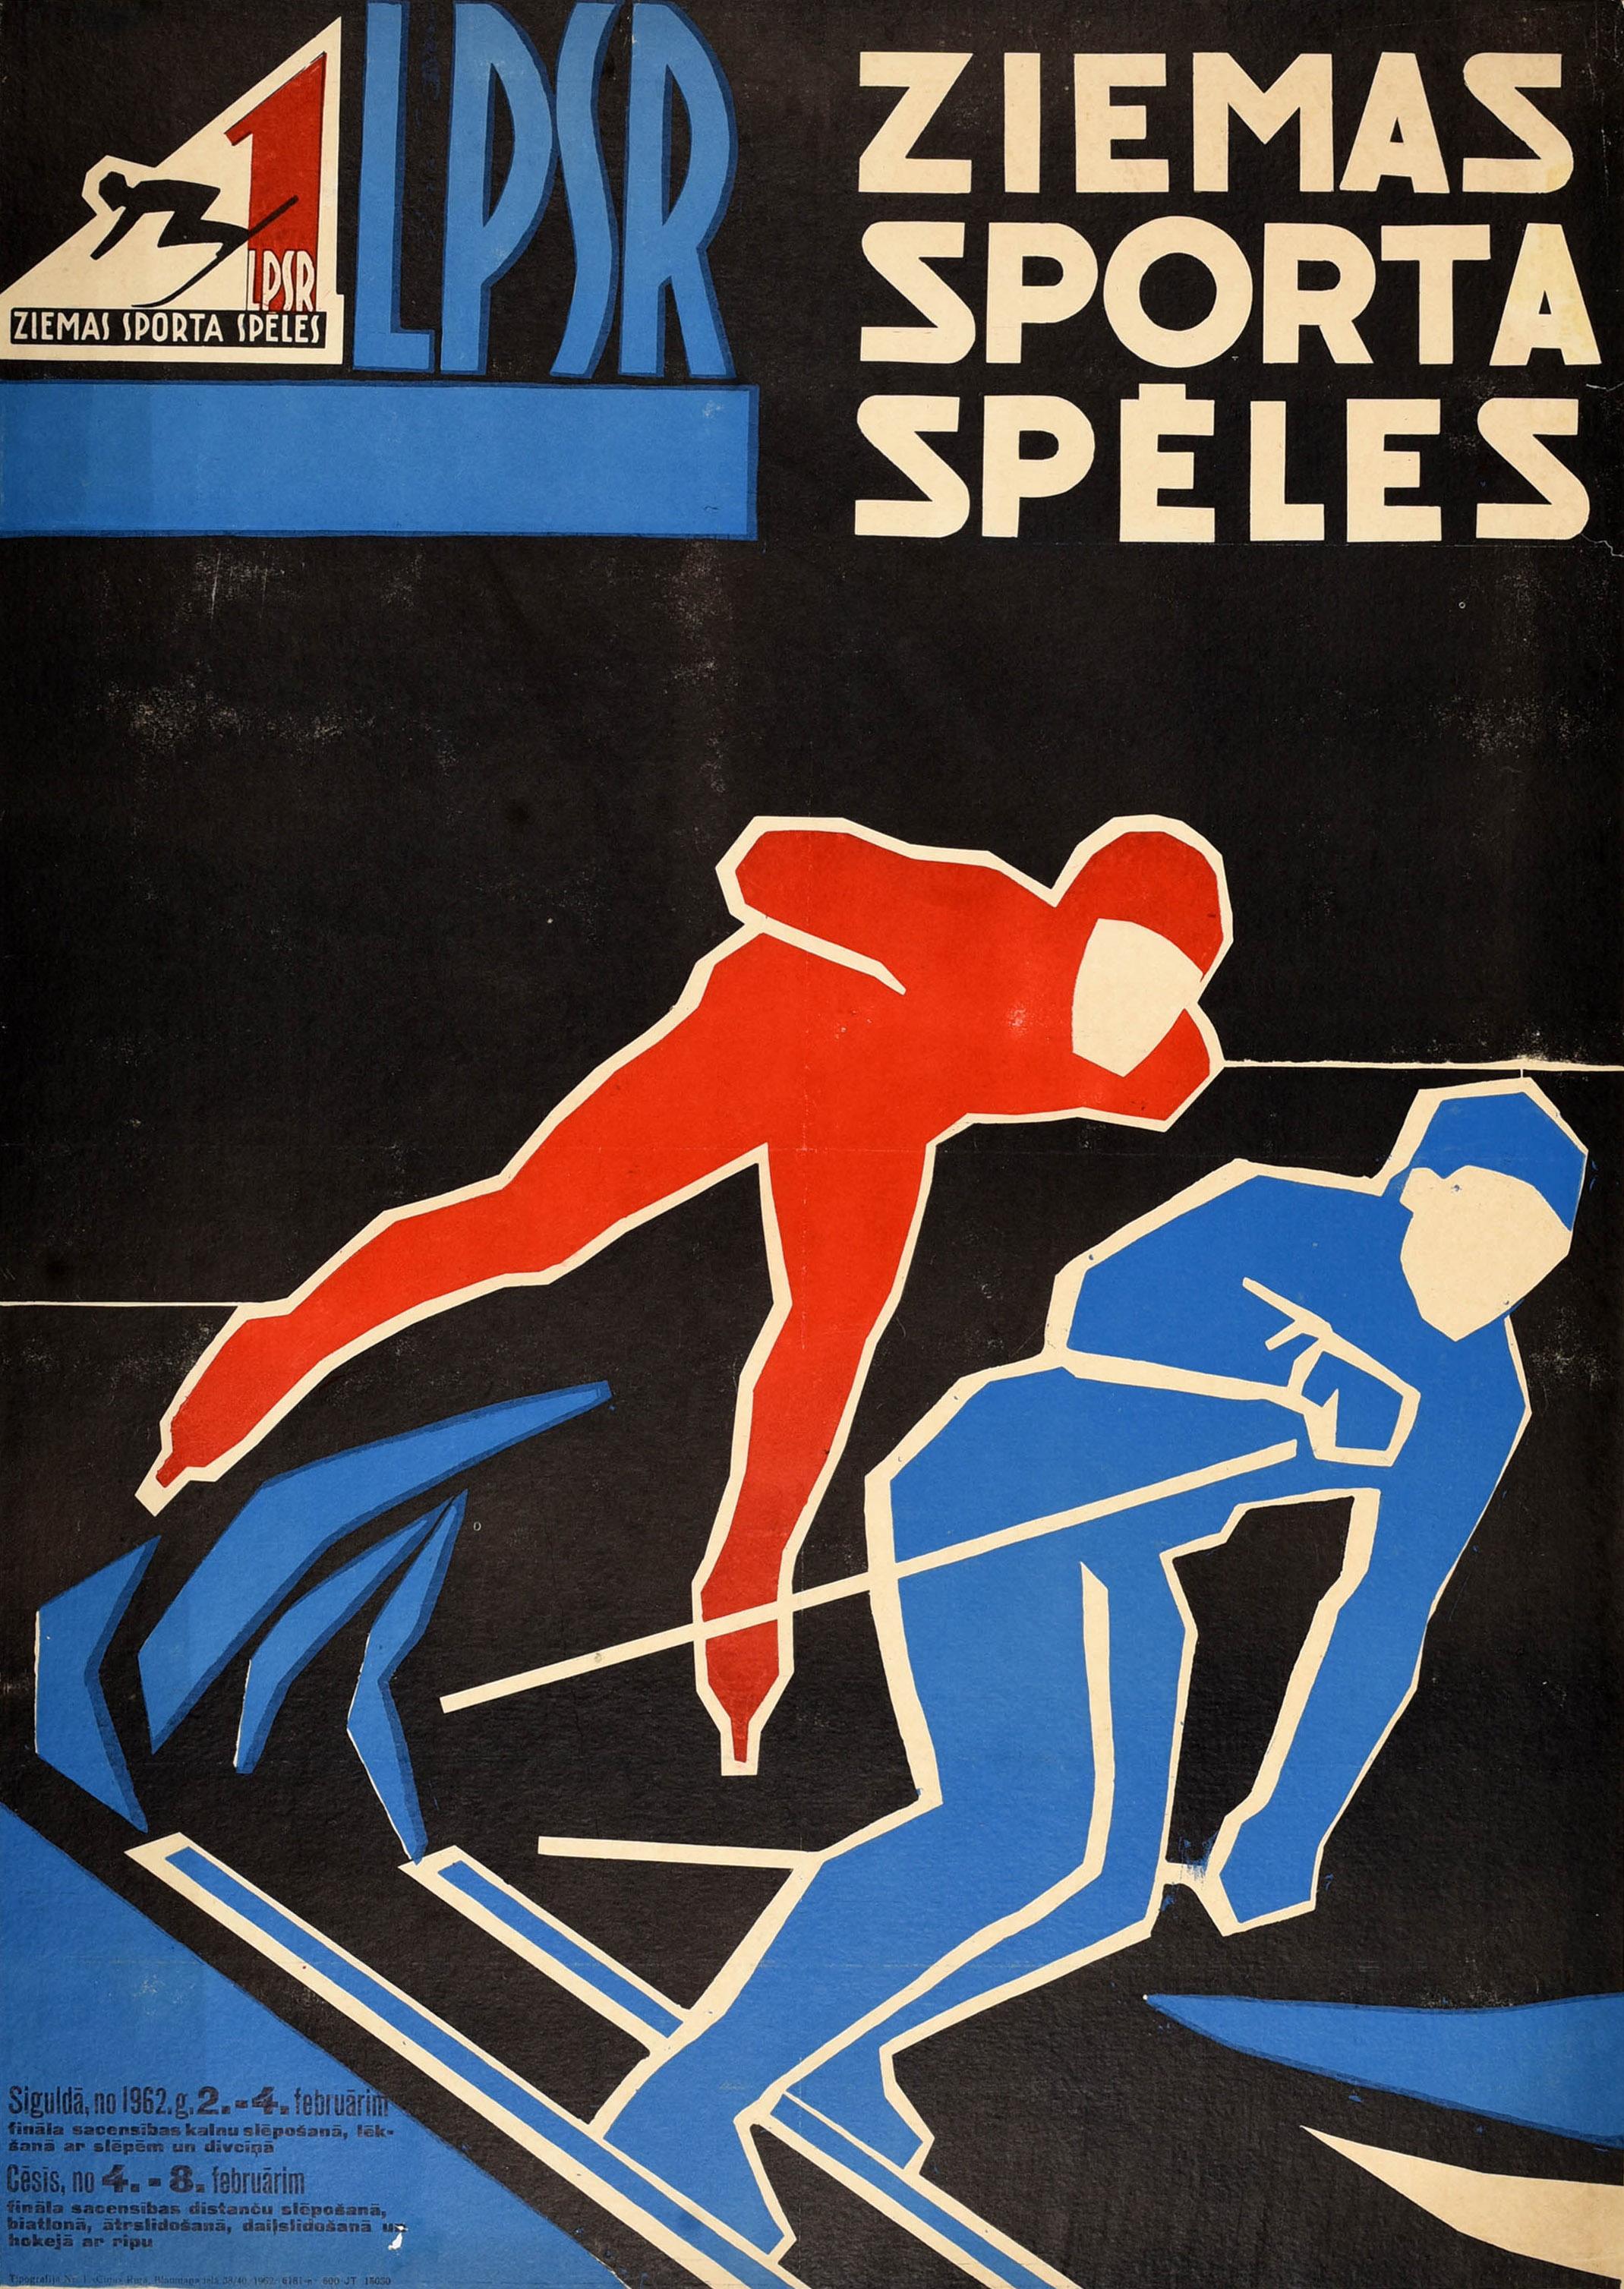 Original-Sportplakat im Vintage-Stil für die Wintersportspiele in Lettland / LSPR Ziemas Sporta Speles, herausgegeben von der Union der Sportverbände und -organisationen der Lettischen SSR, mit einem großartigen grafischen Design, das einen